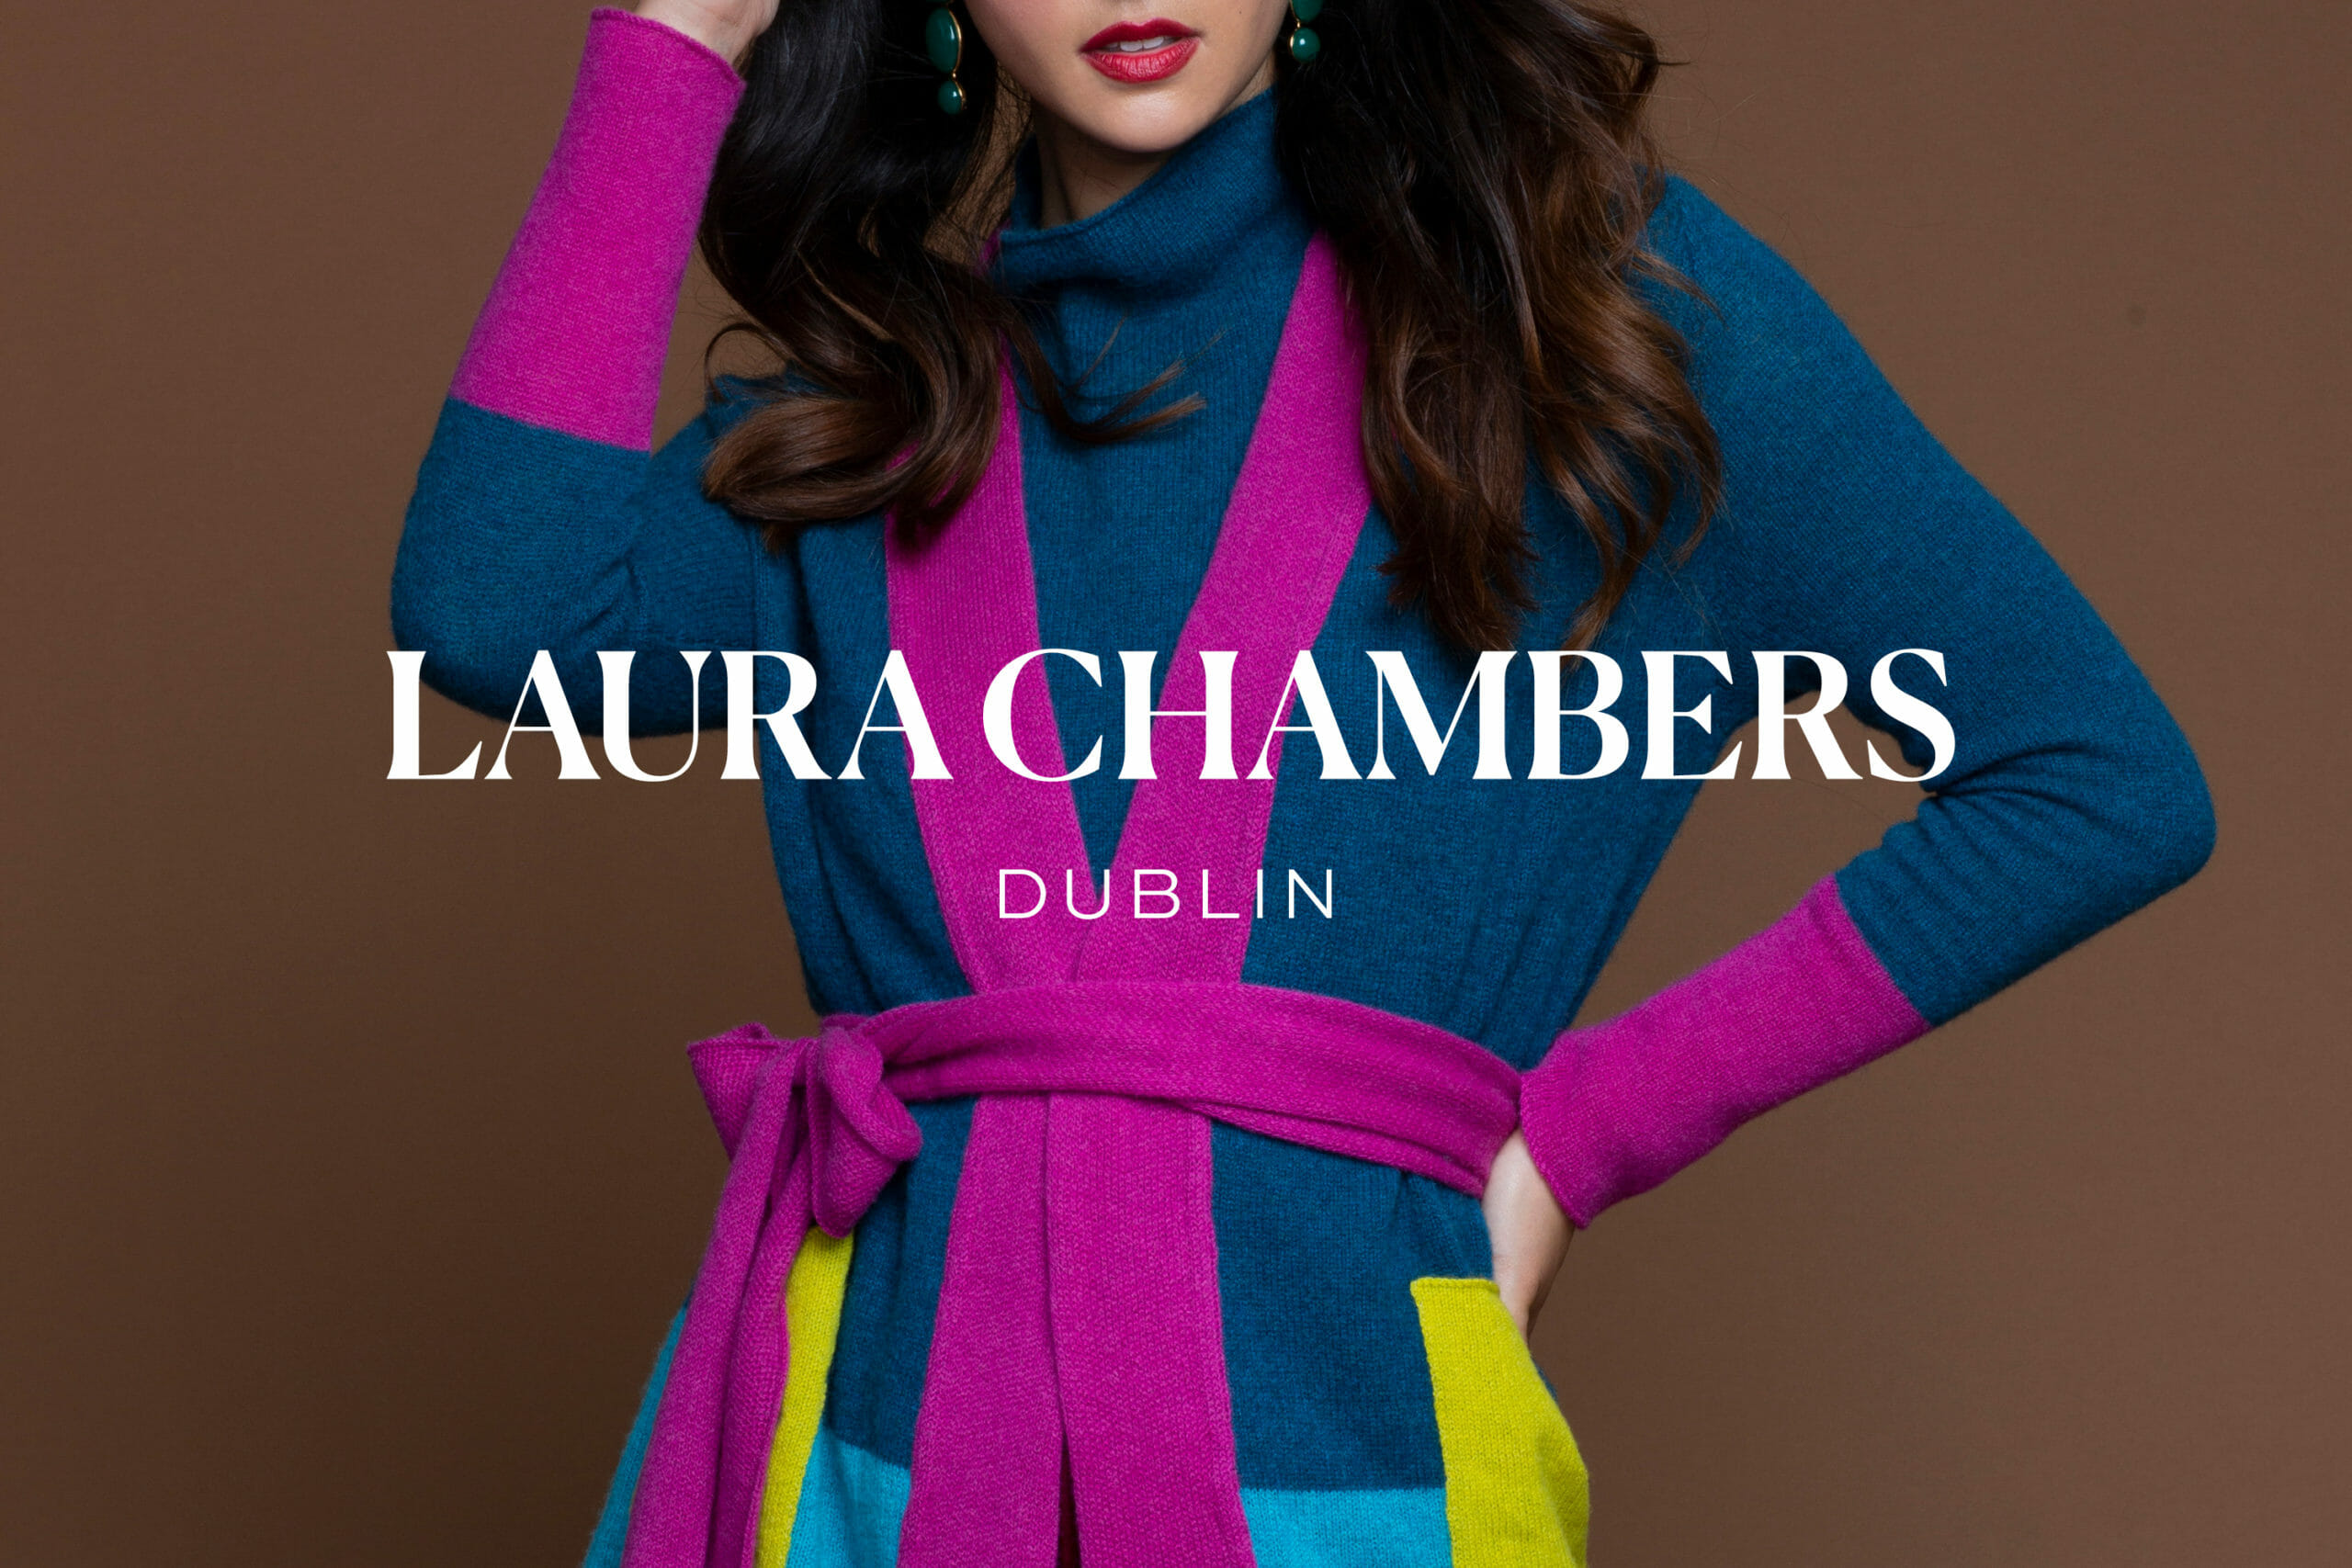 Laura Chambers